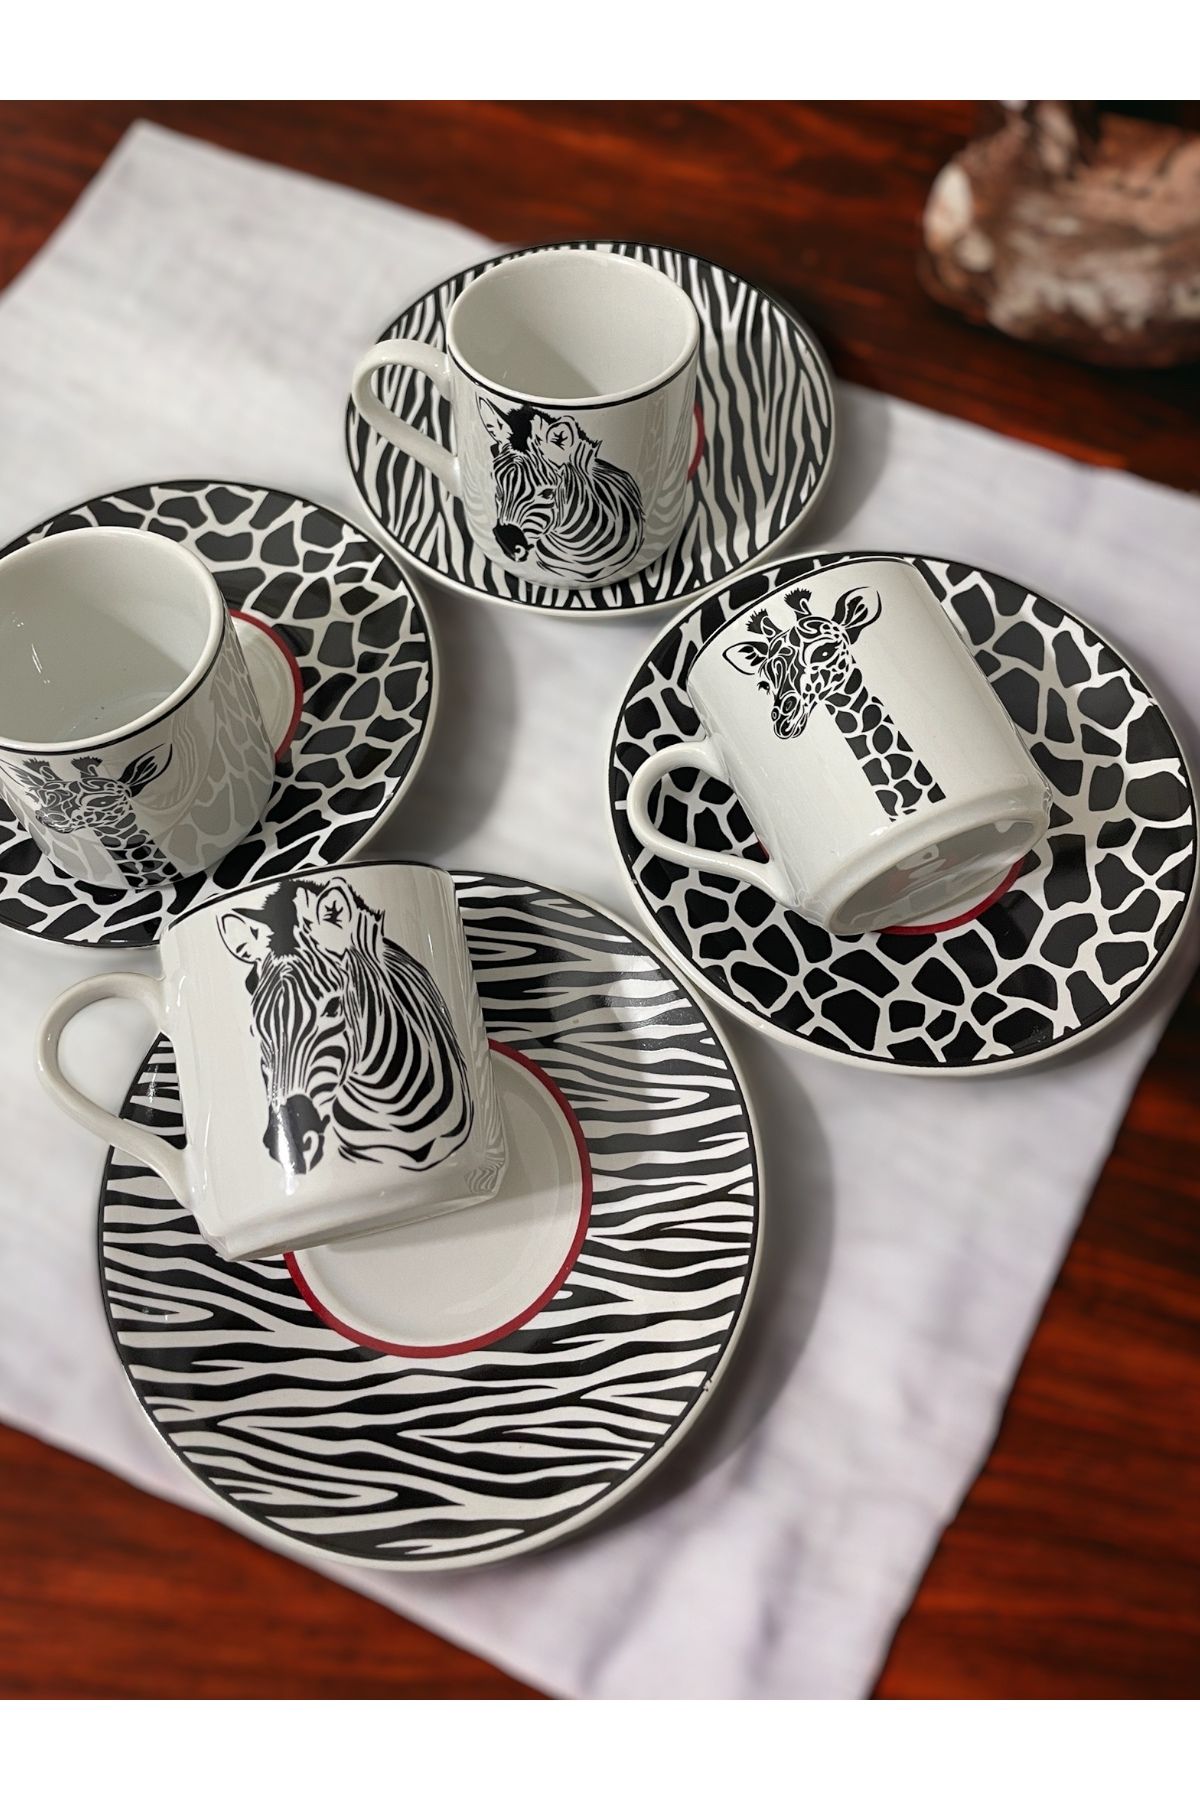 Artistic Quality Dekoratif Şık Tasarım Siyah Beyaz Zebra ve Zürafa Motifli 4 Kişilik Kahve Fincan Seti